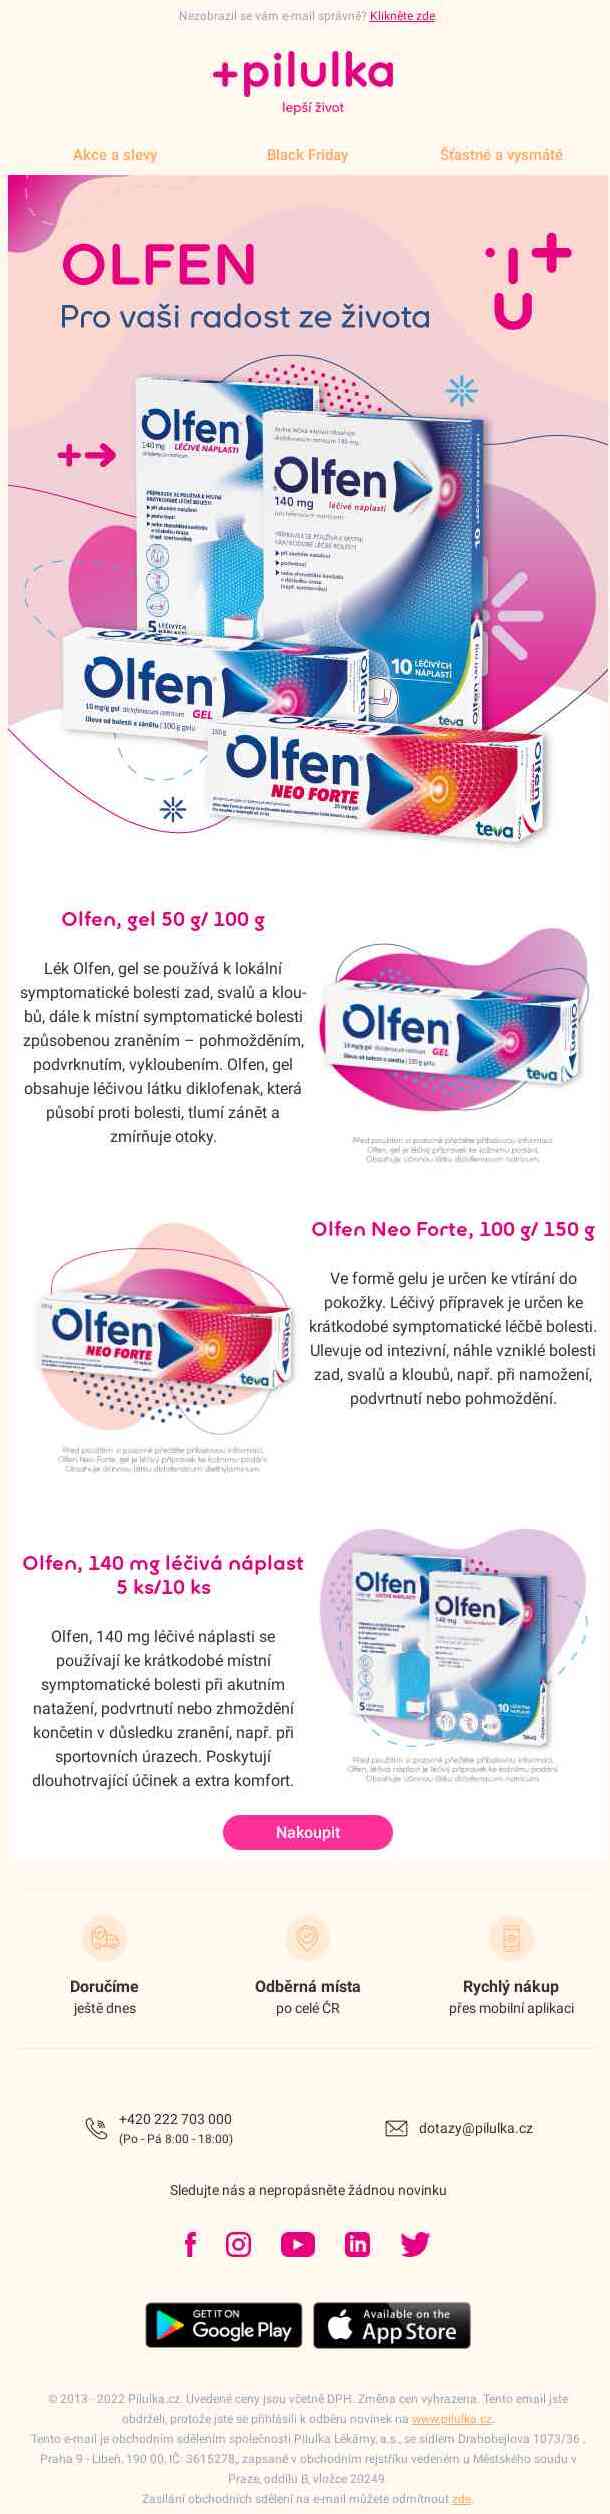 Olfen - úleva od bolesti zad, svalů a kloubů